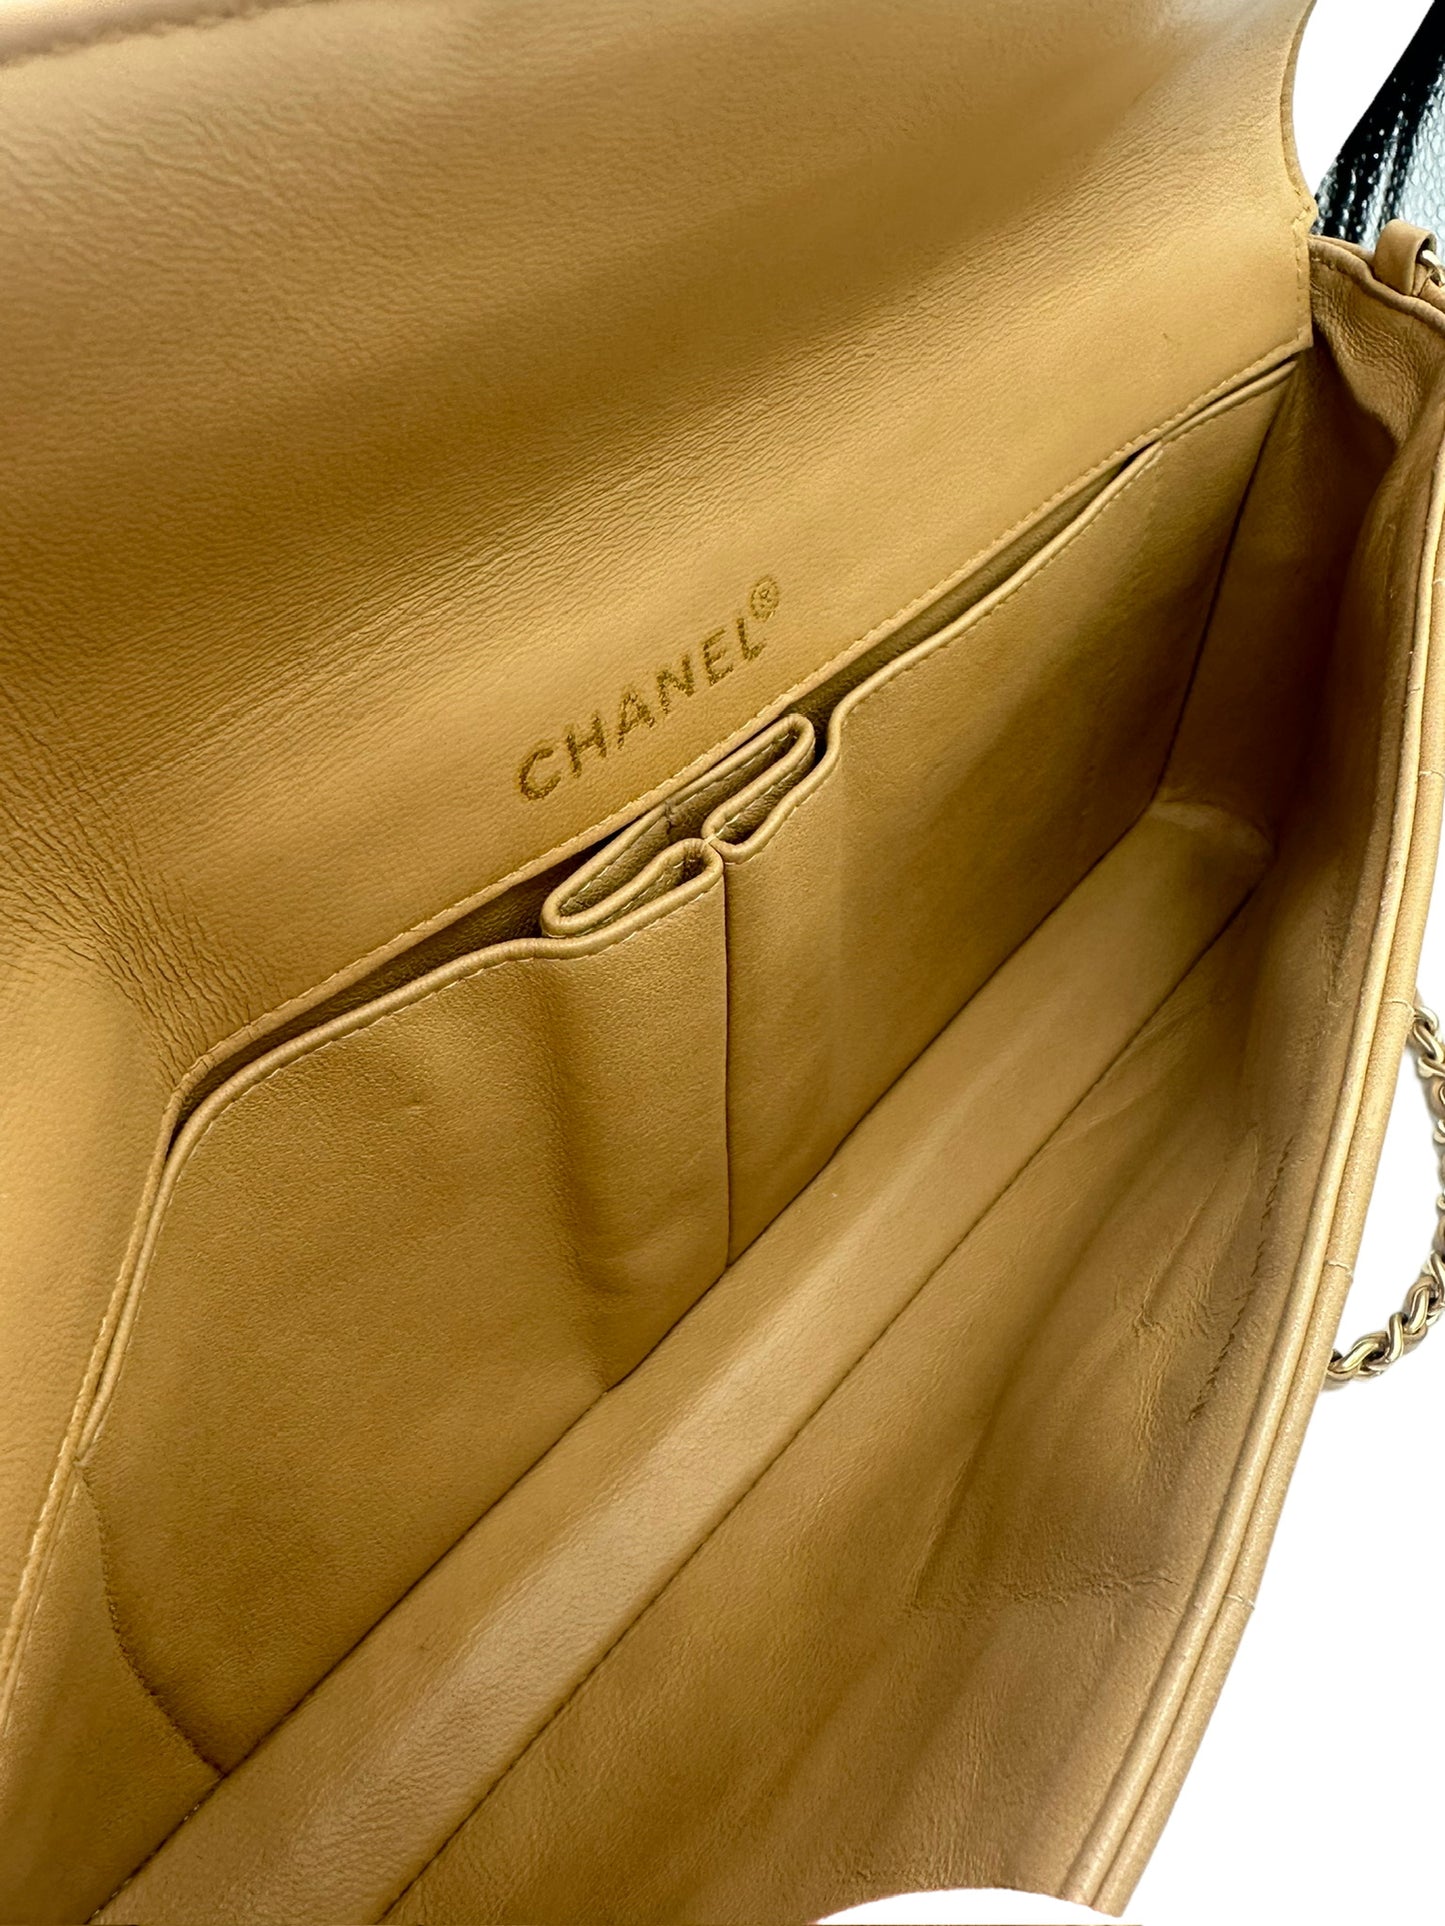 CHANEL - Chocolate Bar Shoulder Bag